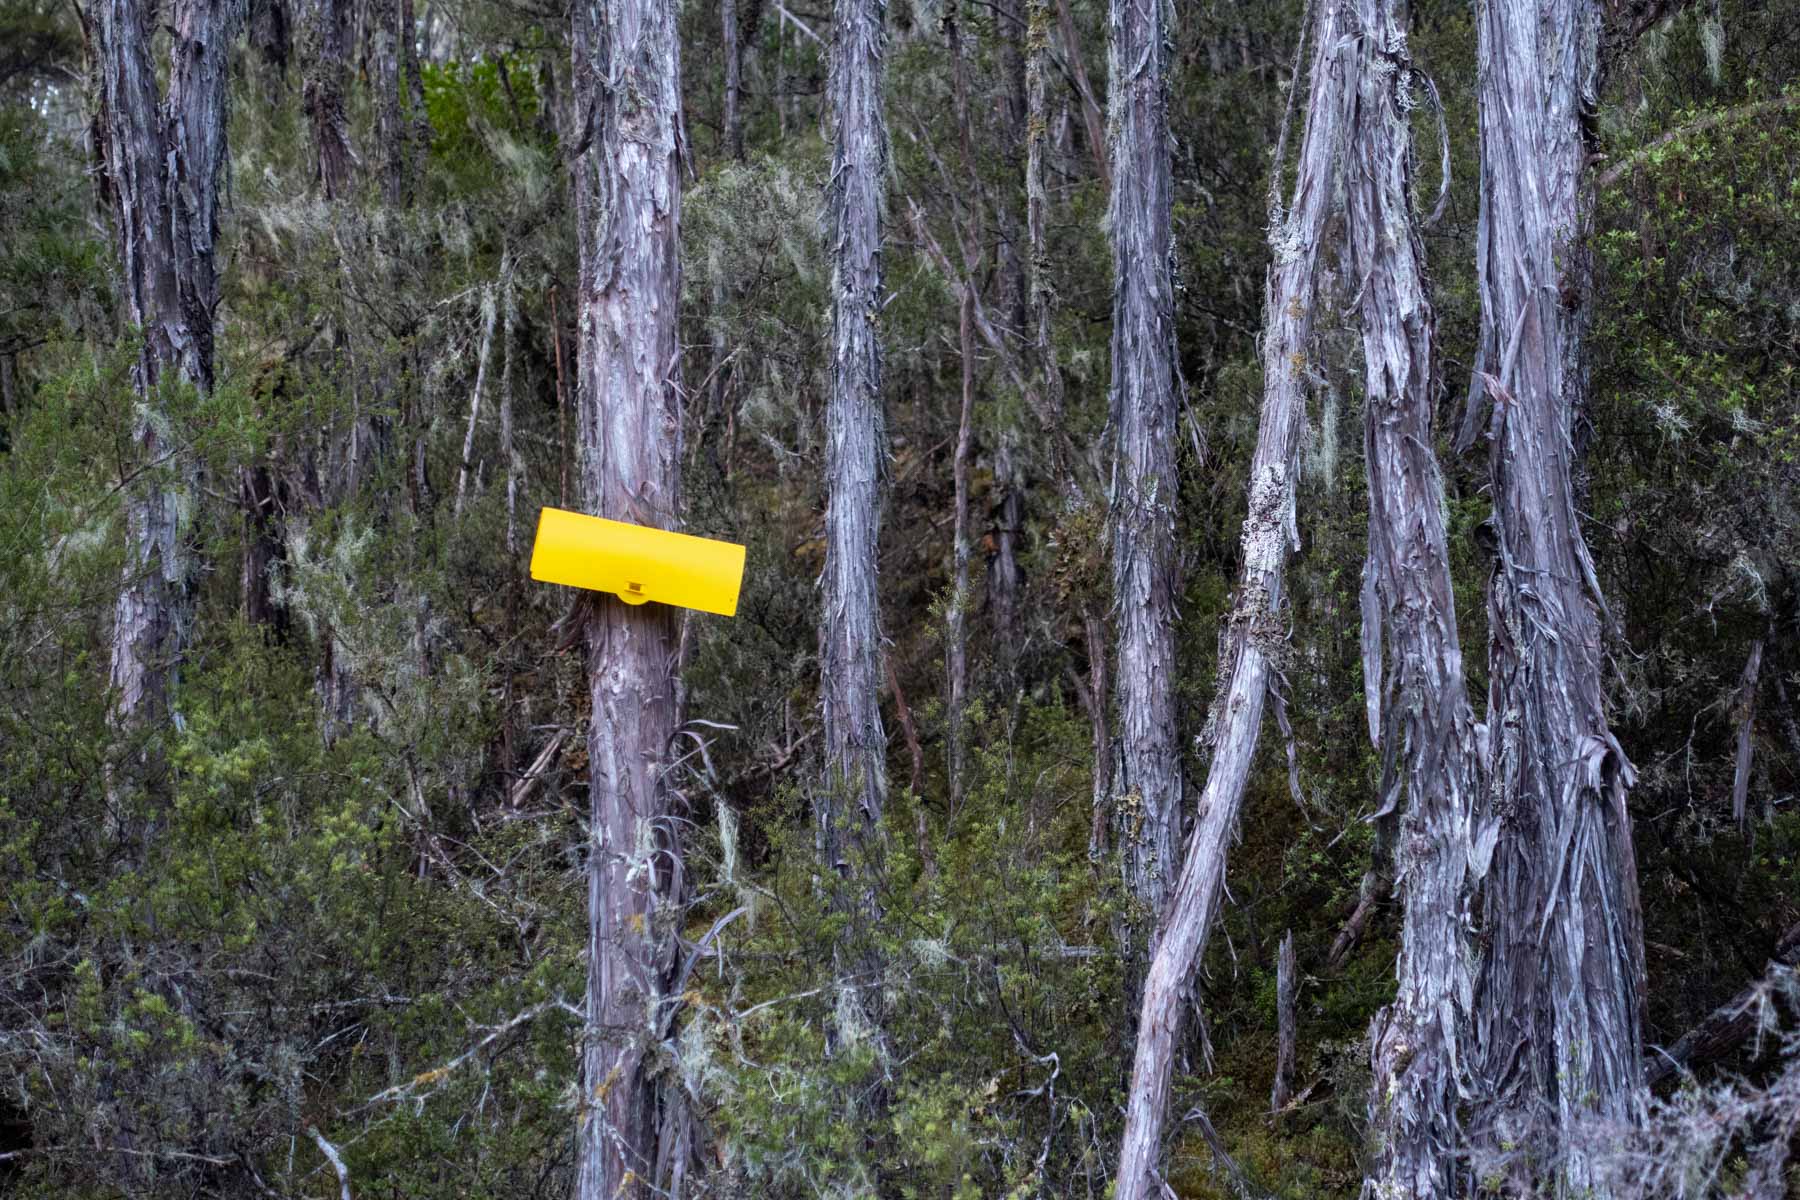 Dans la forêt, une petite boîte en plastique jaune est fixée sur un arbre.